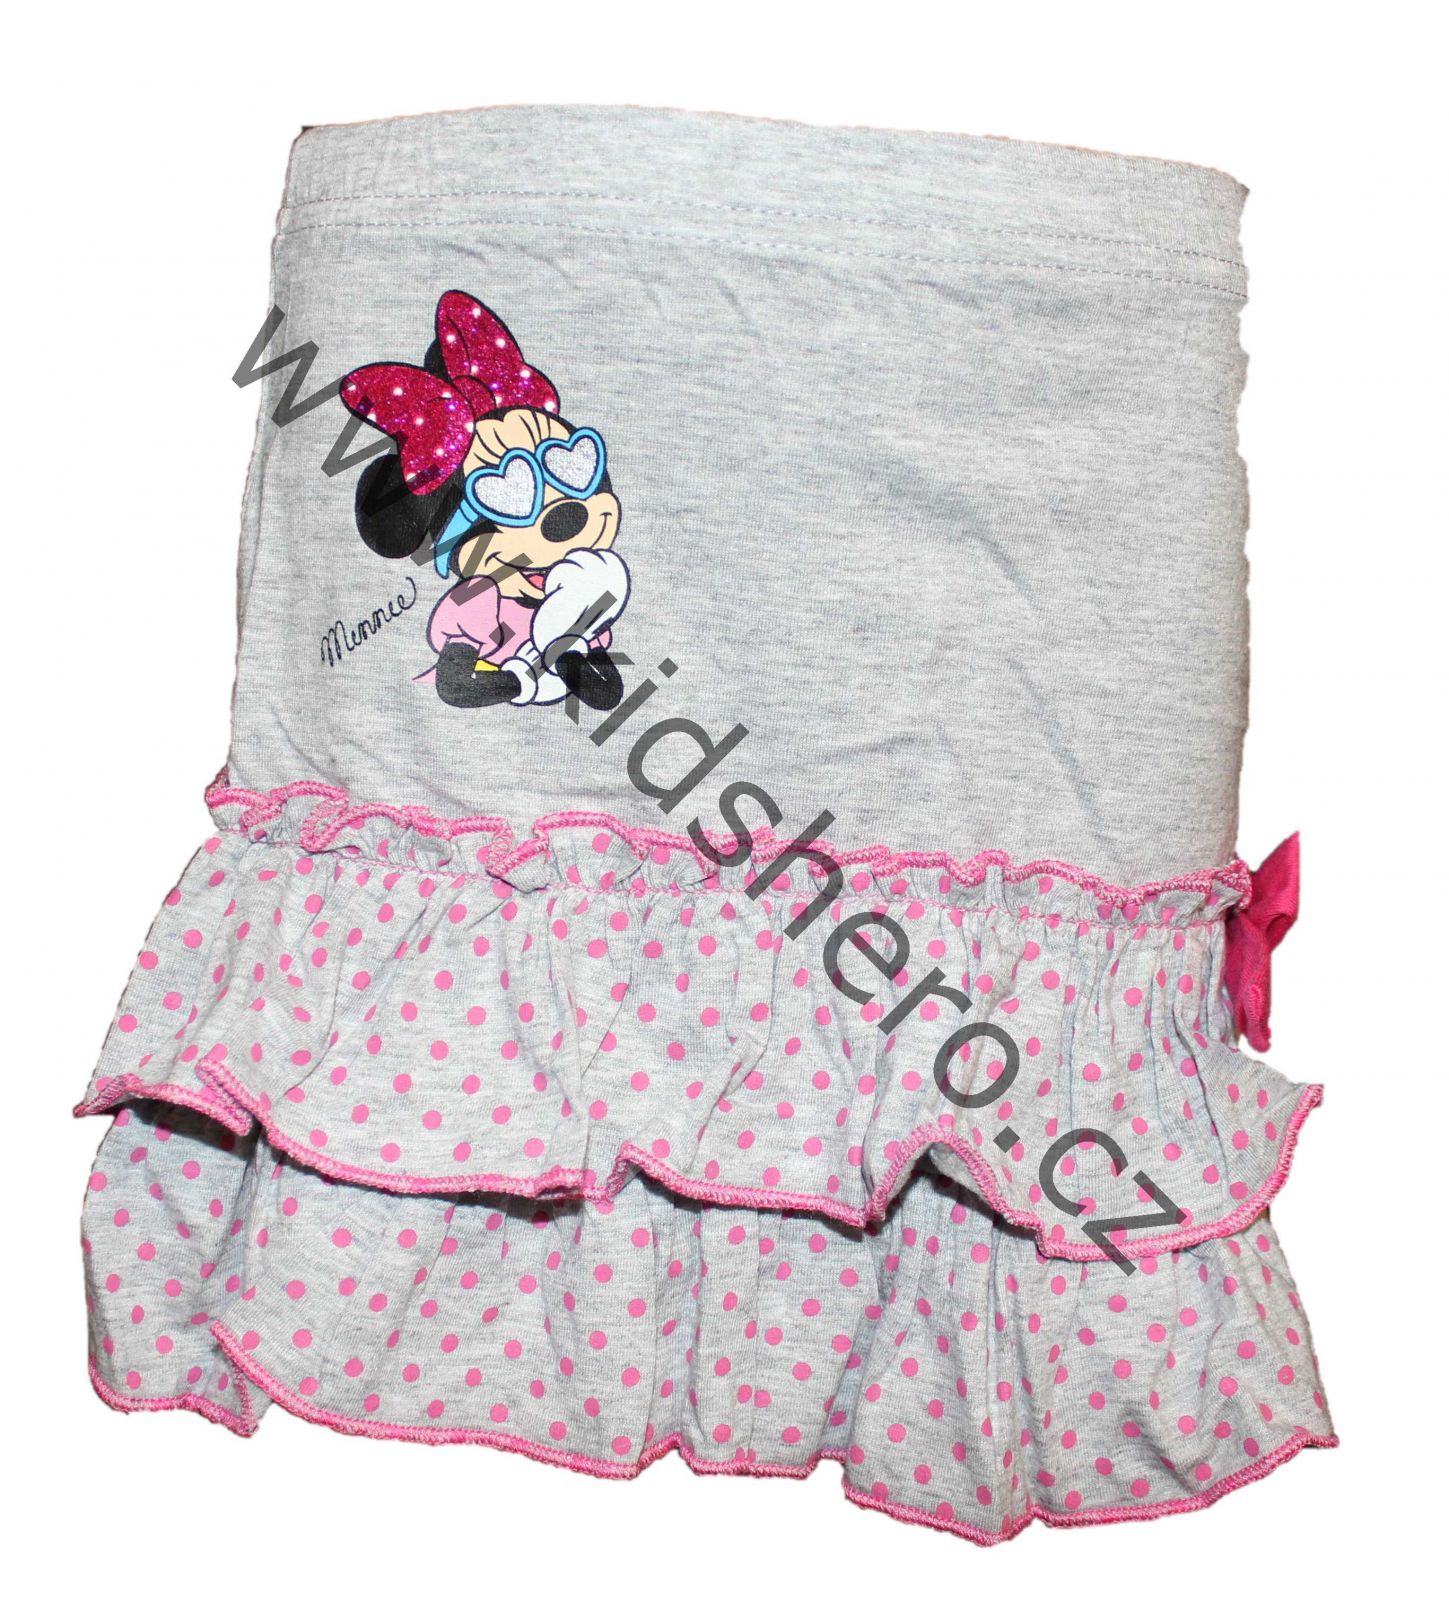 Dětská sukně Minnie, dívčí bavlněná sukně Minnie, sukýnka Disney